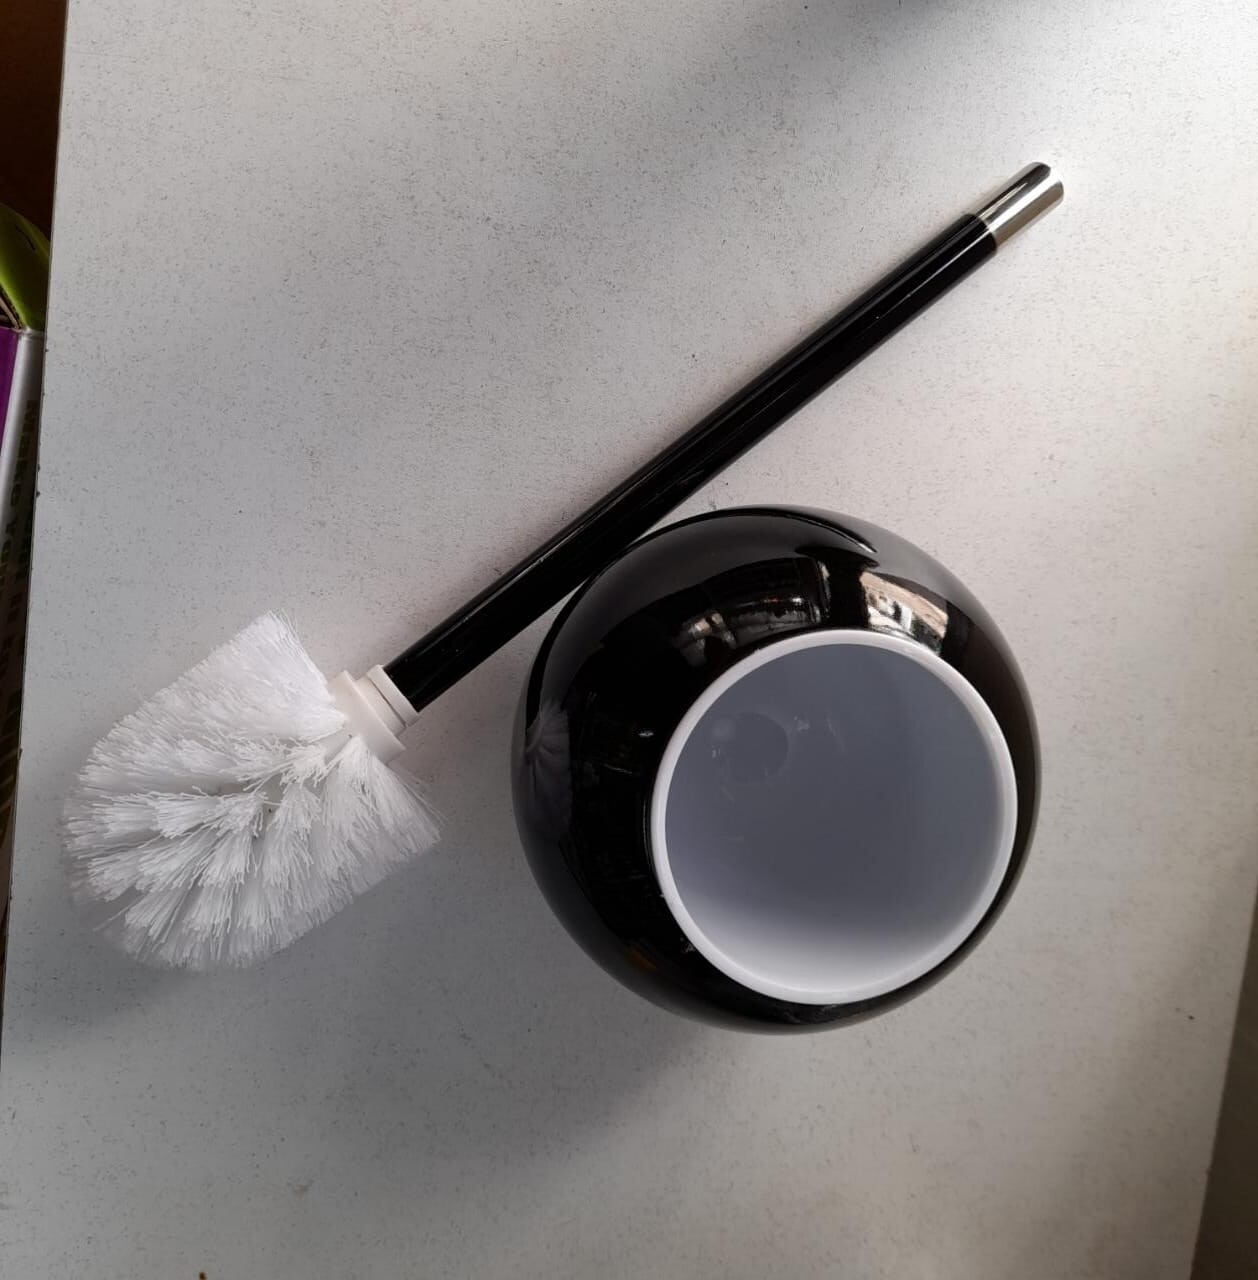 Elegant black toilet brush holder with white removable bowl